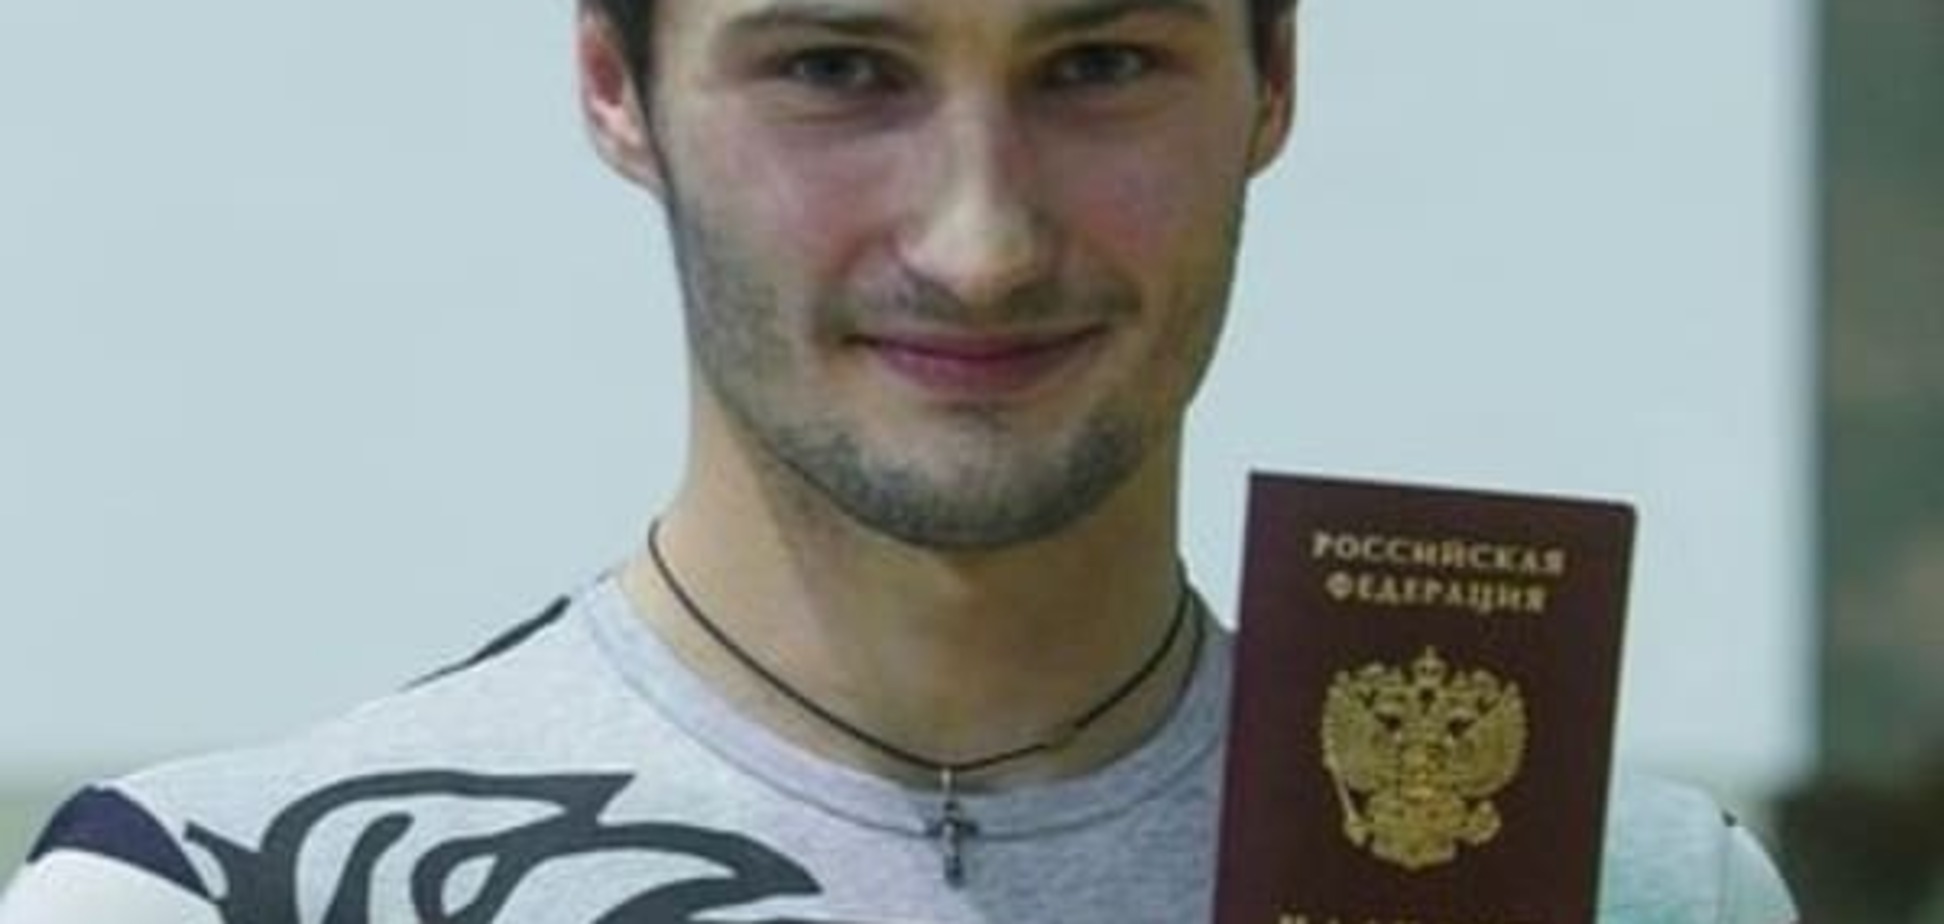 'Это предательство!': украинский чемпион шокировал тренера российским гражданством